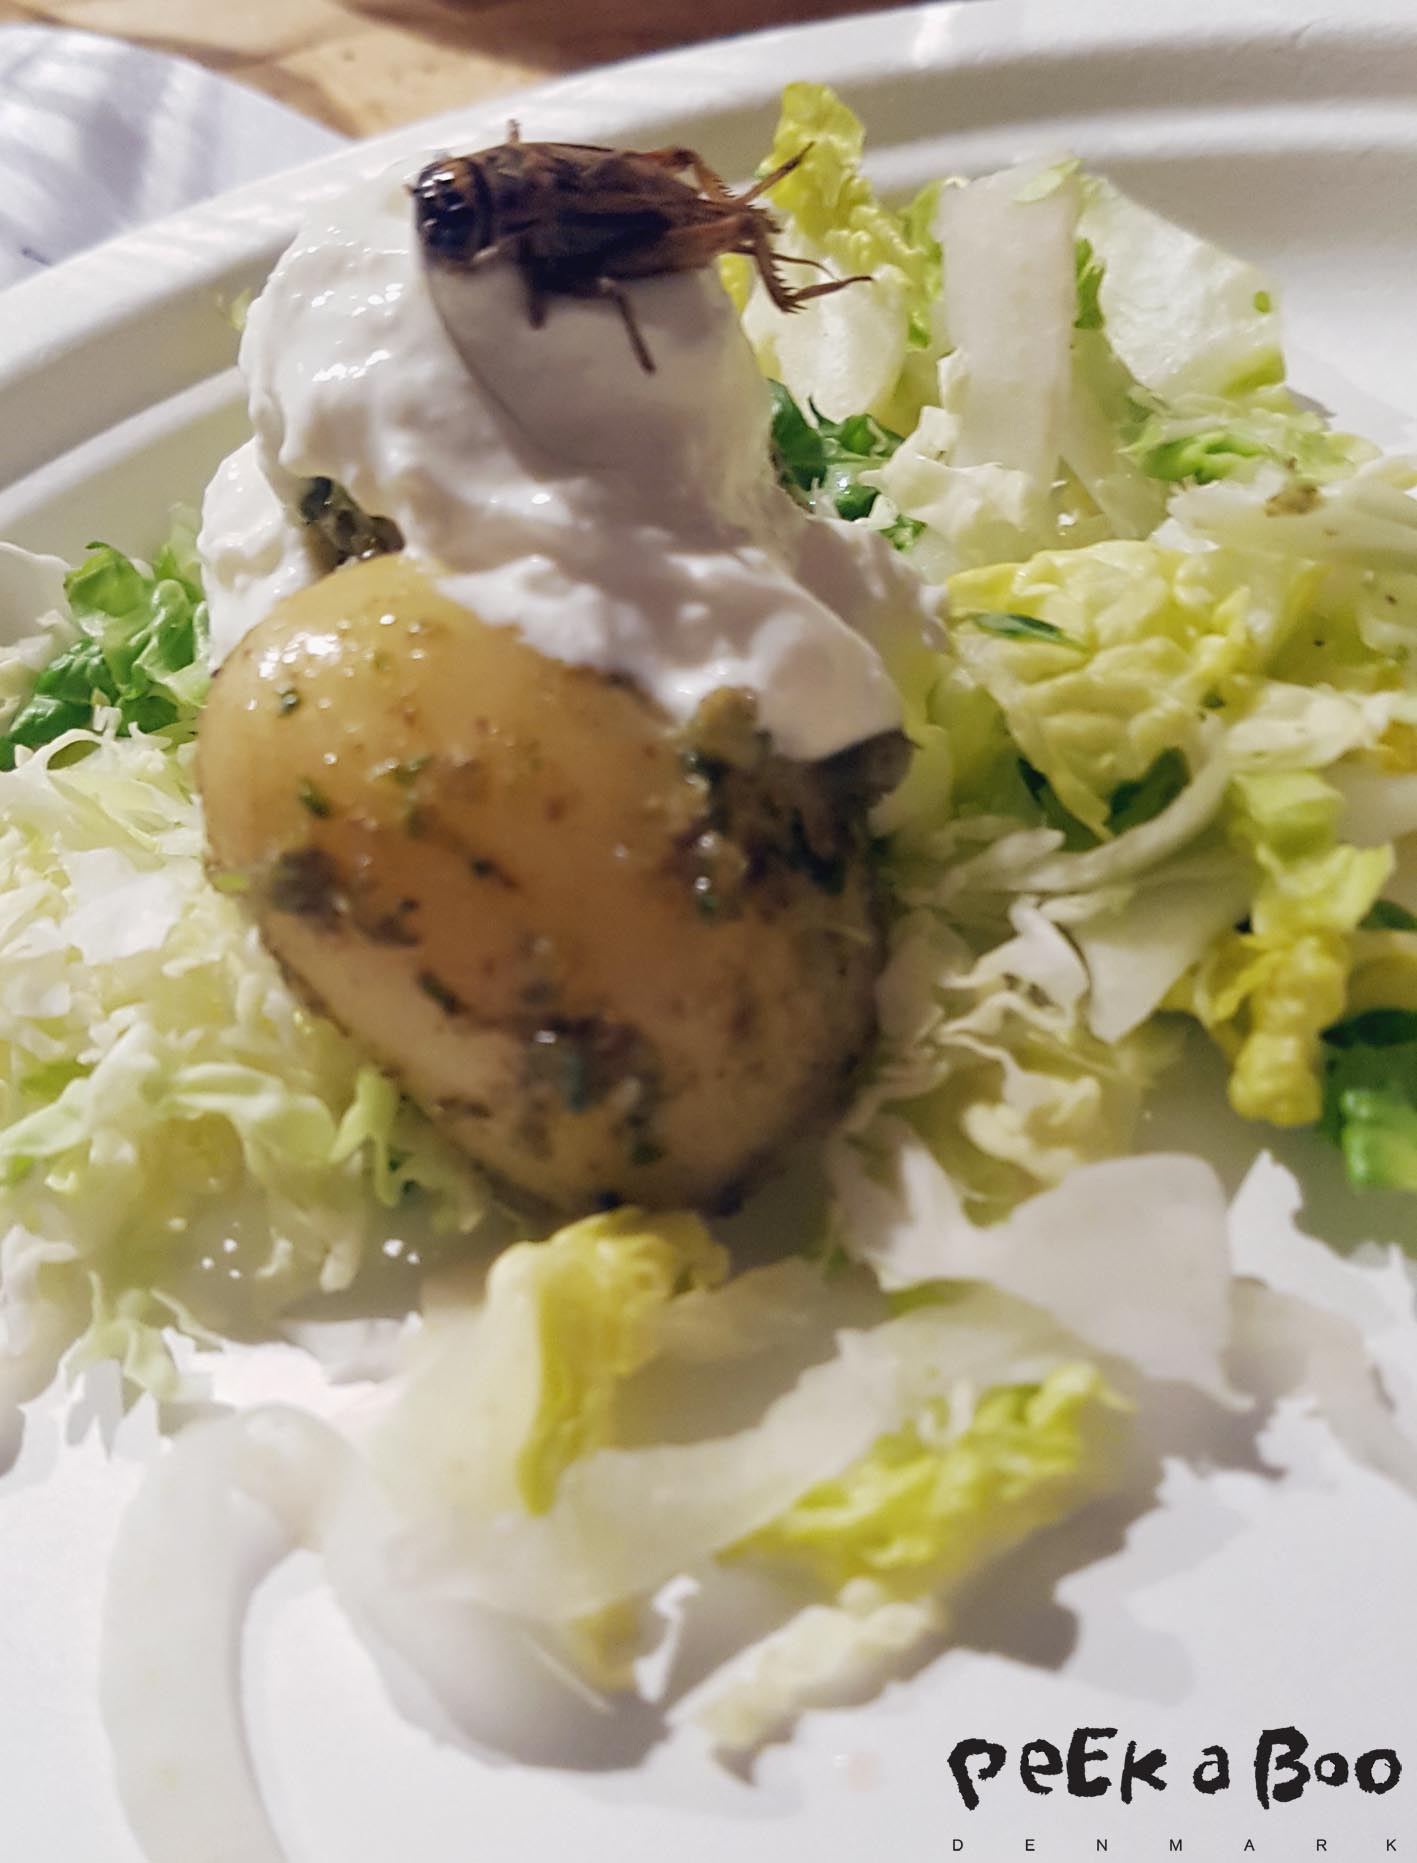 crick'it serverer sommersalat med nye danske kartofler i fårekyllinge pesto toppet med ostecreme og syltede grønsager.